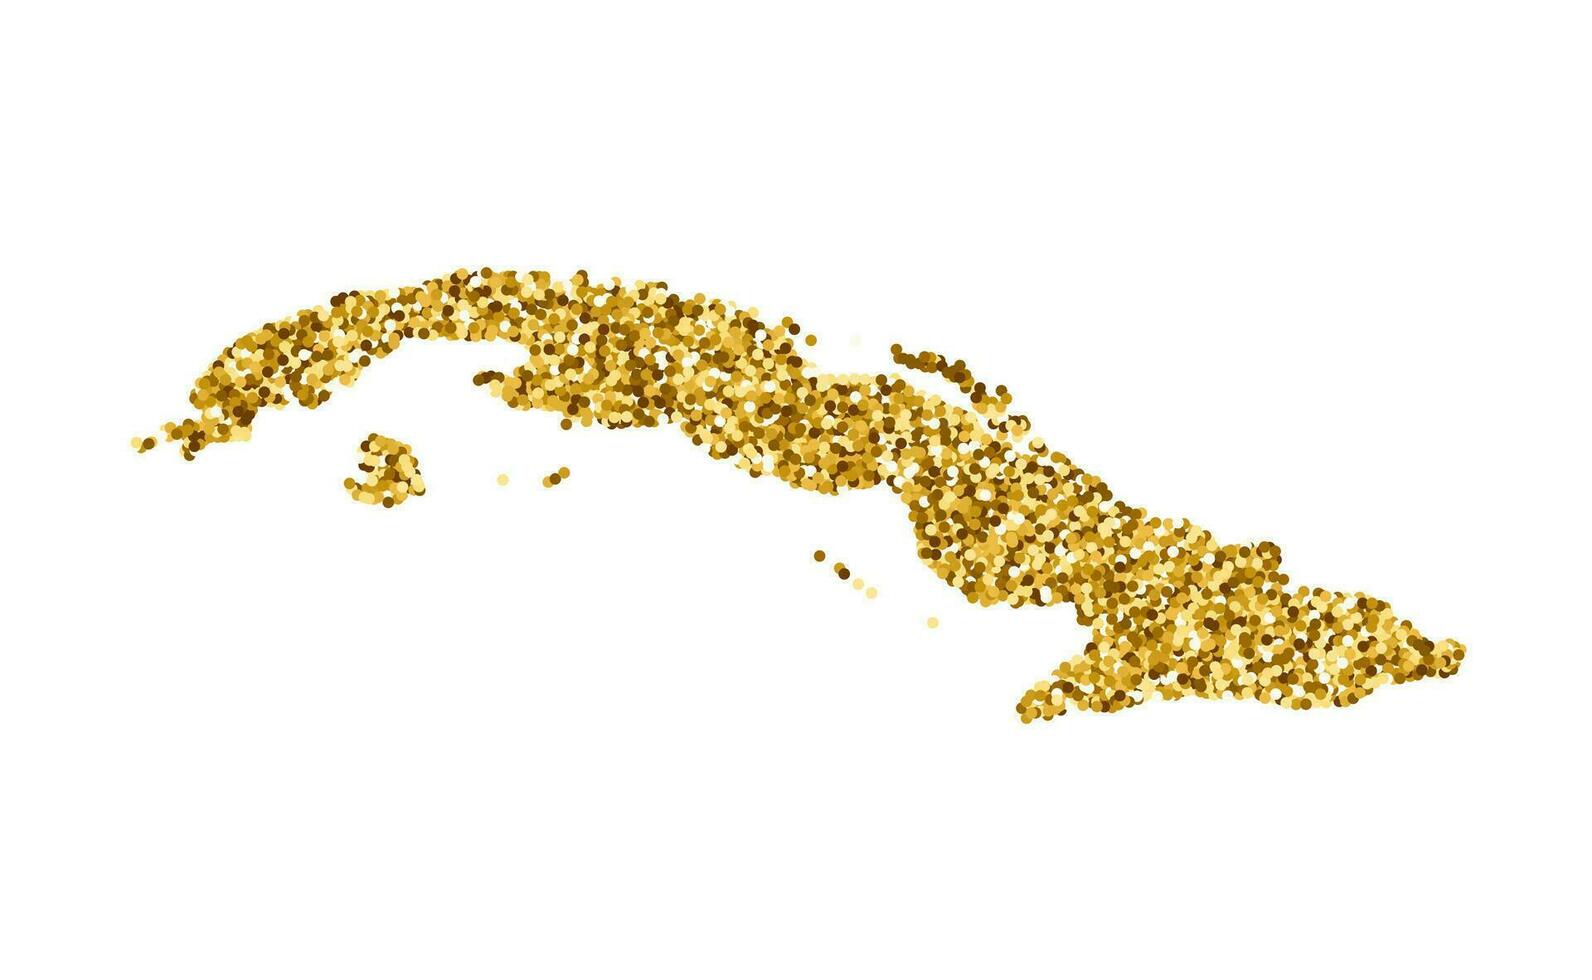 vettore isolato illustrazione con semplificato Cuba carta geografica. decorato di brillante oro luccichio struttura. Natale e nuovo anno vacanze decorazione per saluto carta.